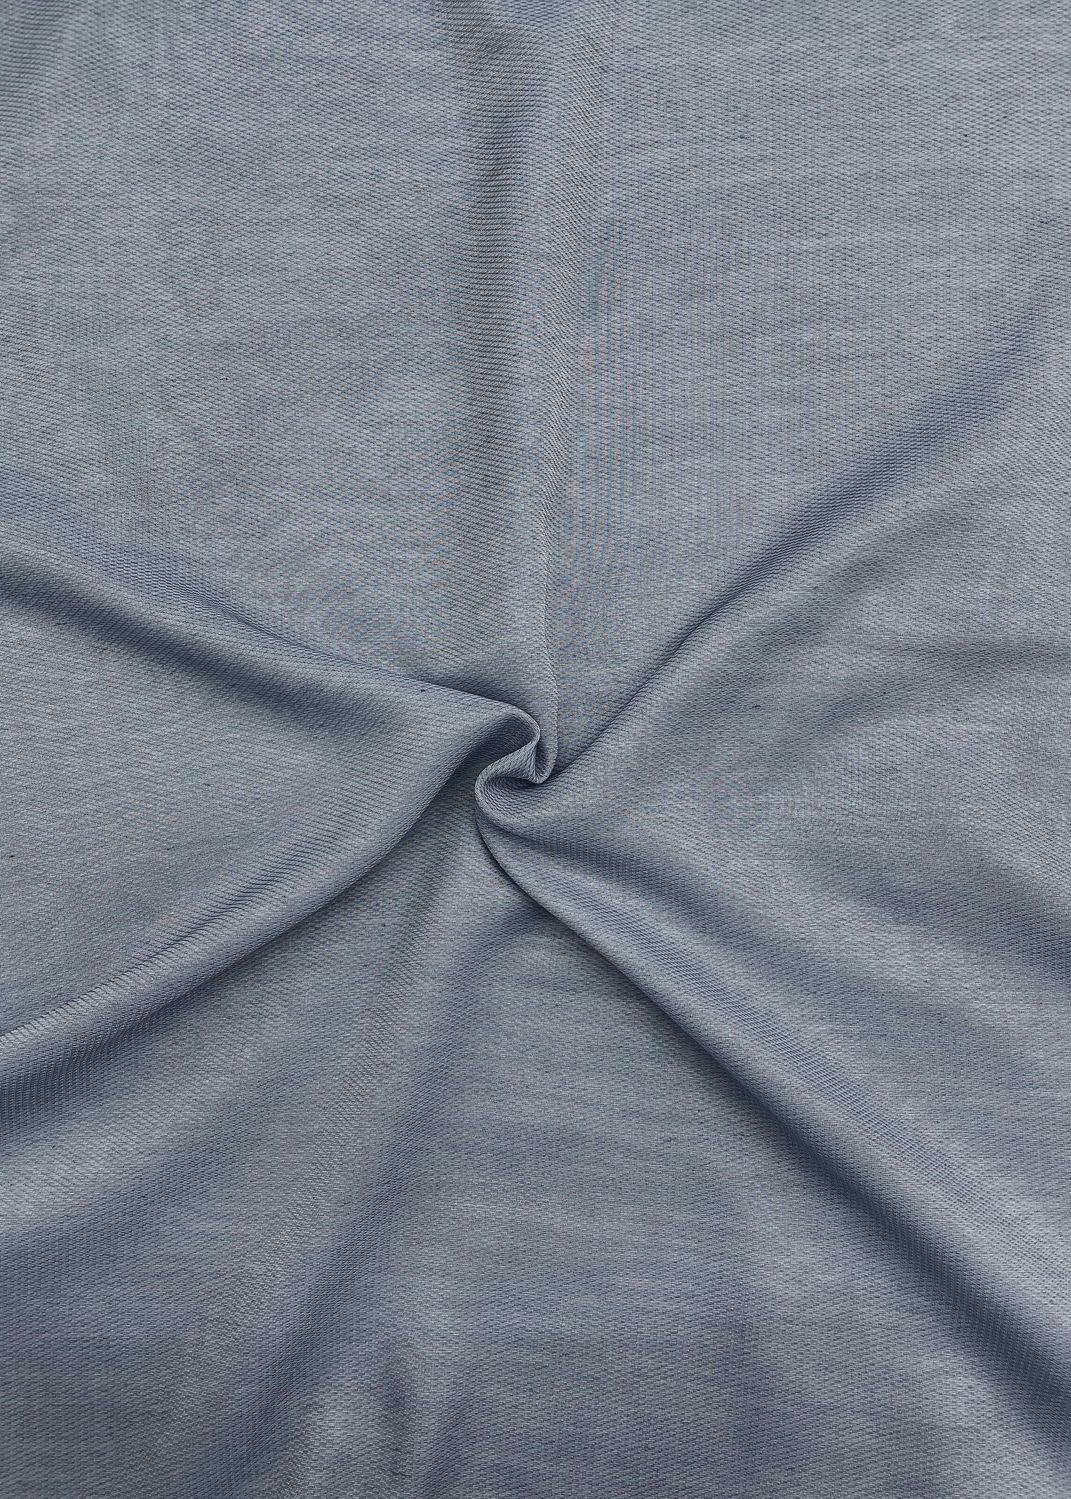 Тюль "Fortuna", однотонна Довжина 2,9м колір сіро-блакитний 1316т, Тюль на метраж, Без кріплення, тканина на відріз, Потрібну Вам ширину вказуйте при покупці. (Ширина набирається по довжині рулона.), 2,9 м.